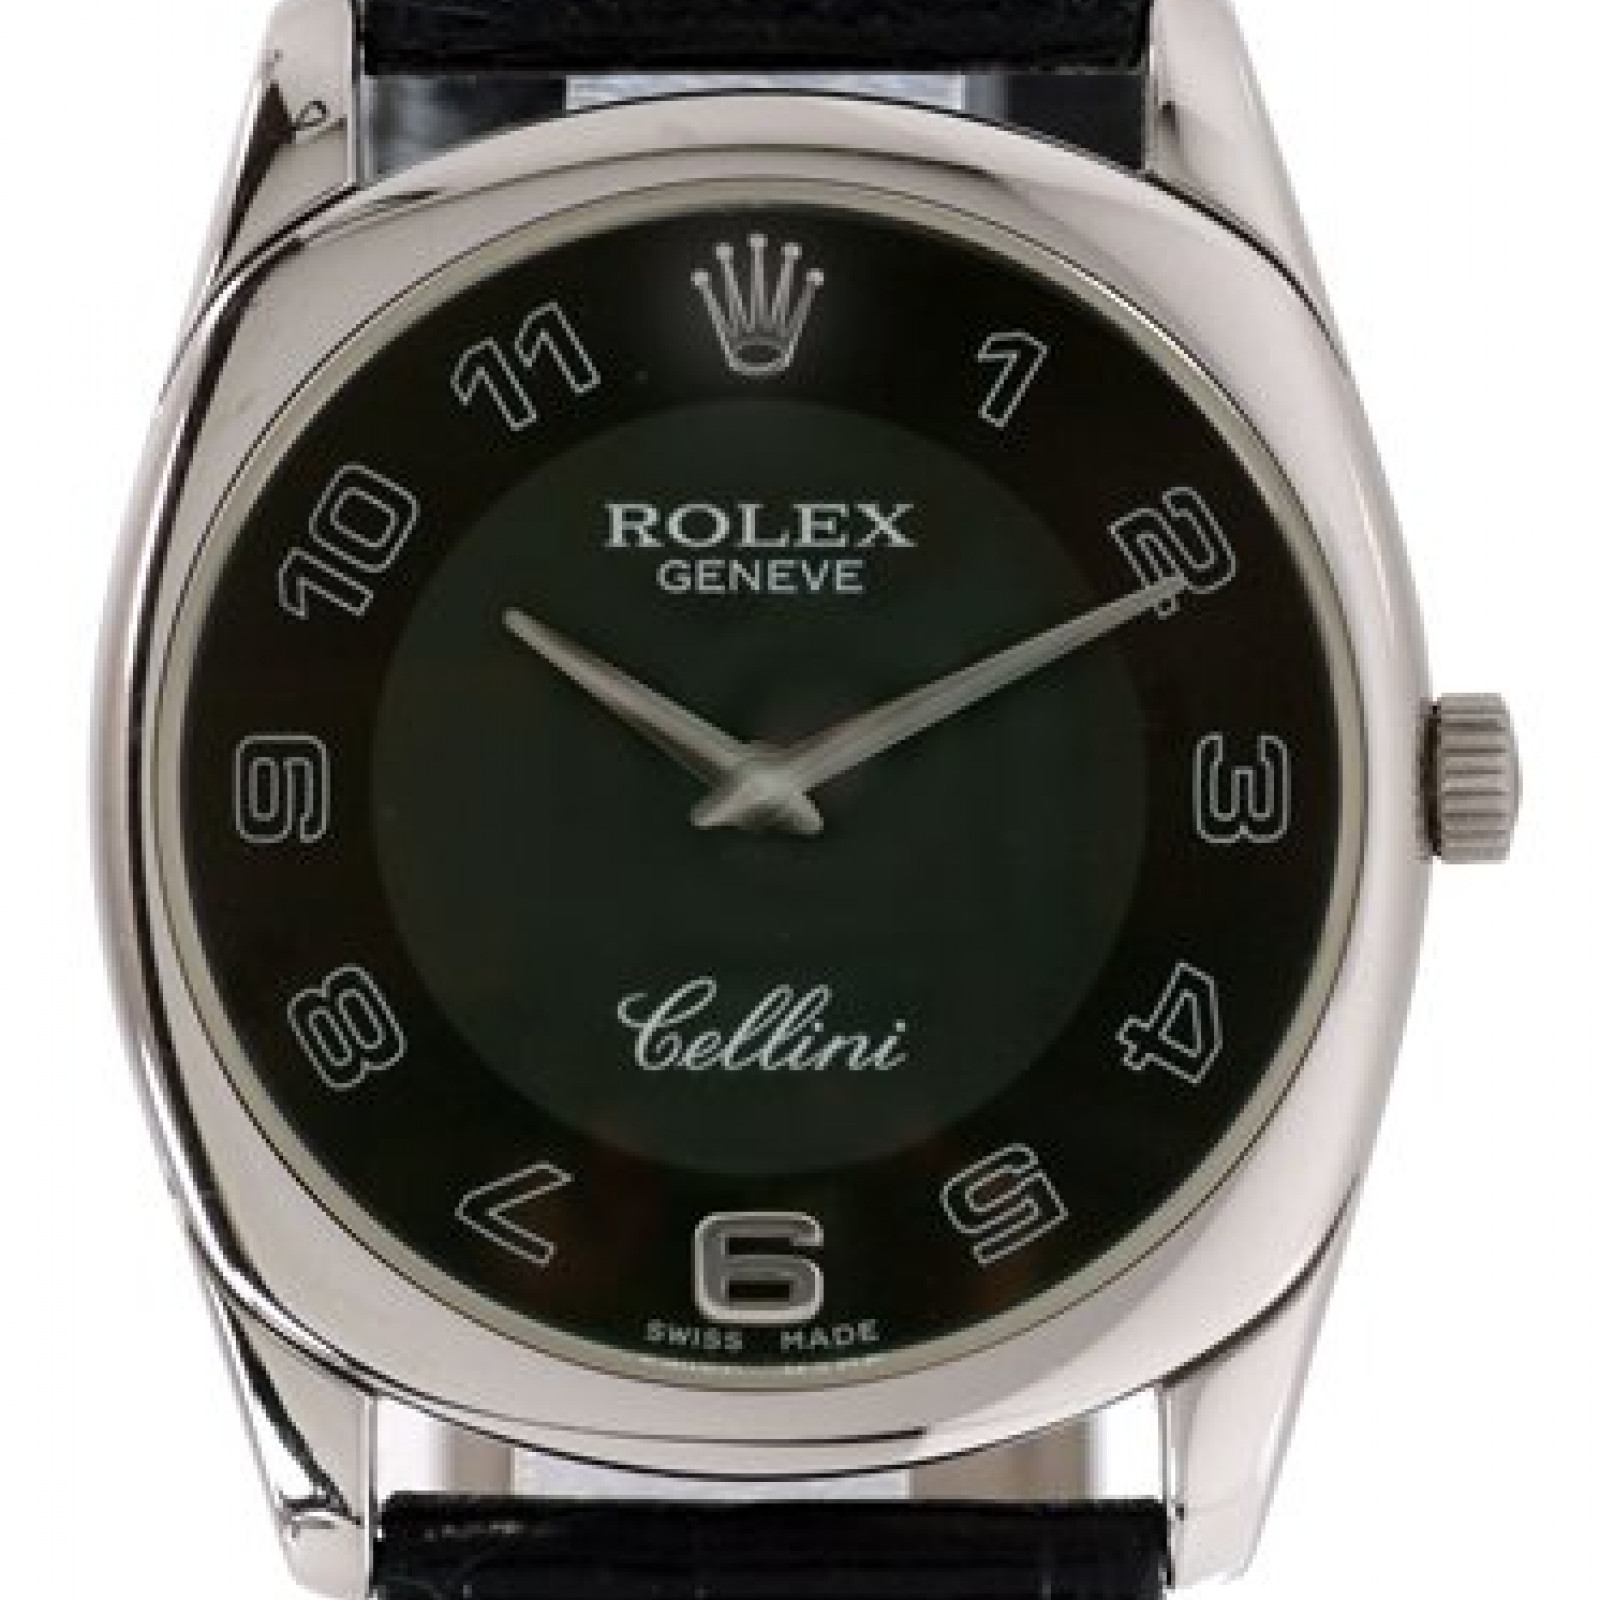 Rolex Cellini Danaos 4233/9 Gold